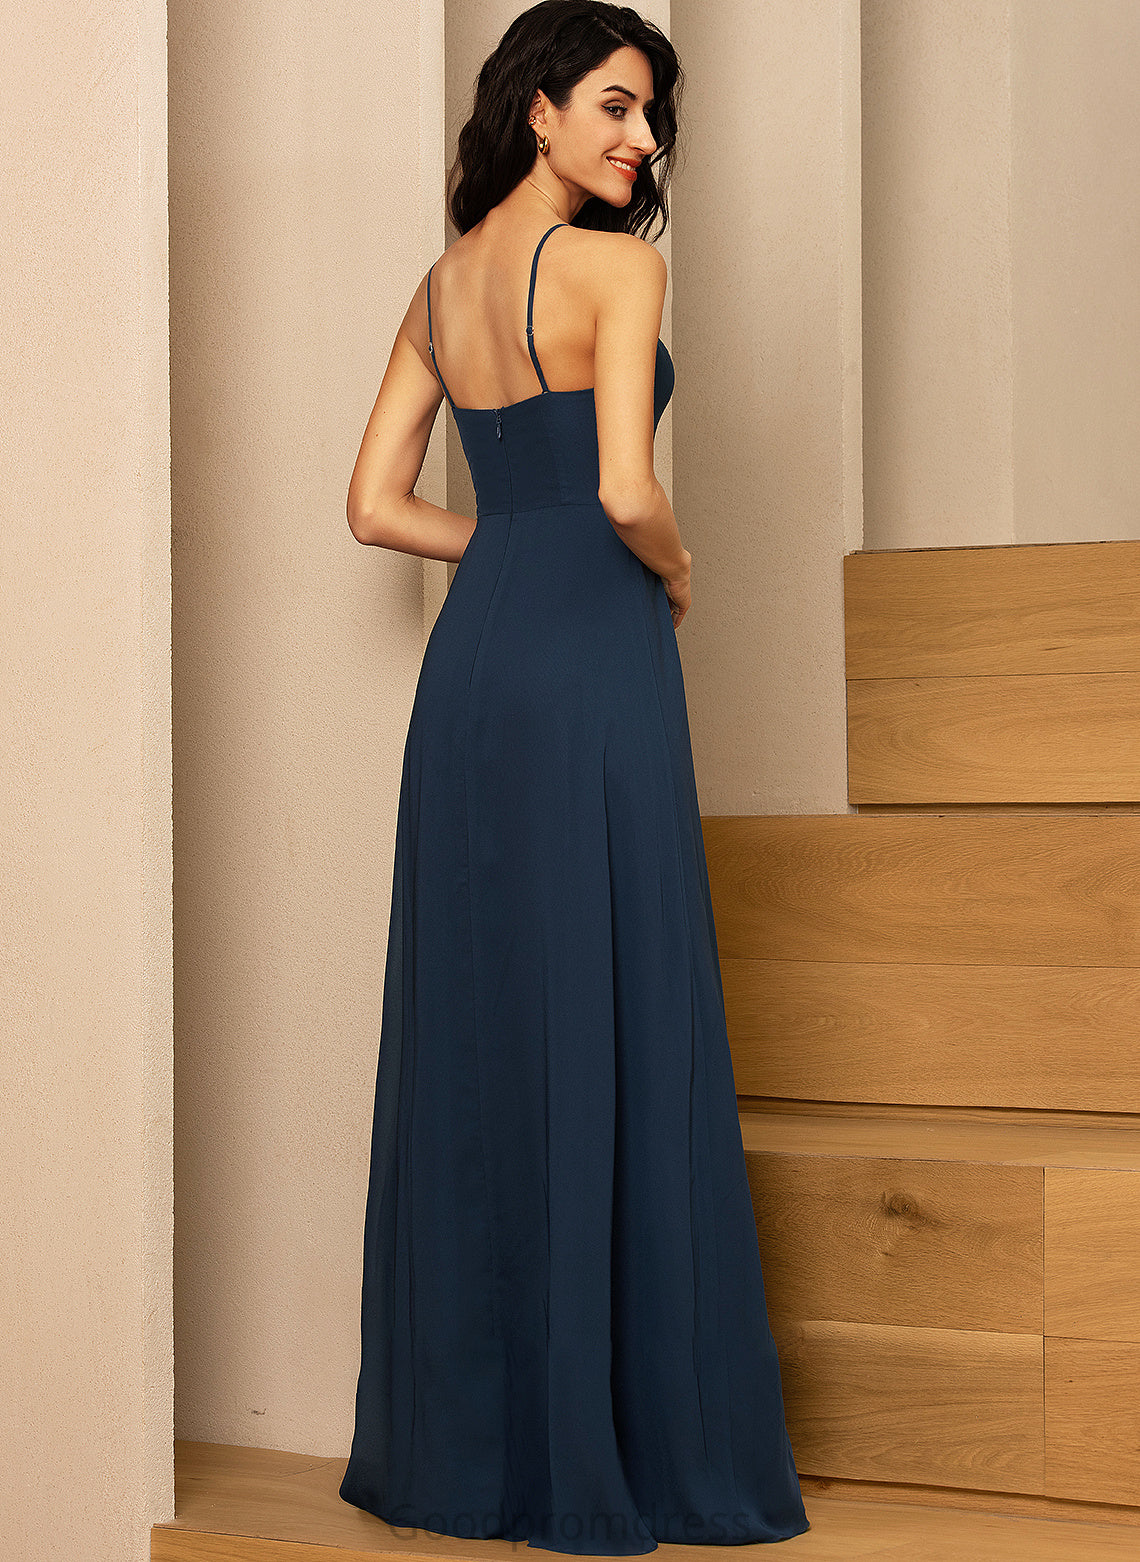 Fabric Neckline Silhouette SplitFront Length Embellishment SquareNeckline A-Line Floor-Length Aniyah A-Line/Princess Natural Waist Bridesmaid Dresses